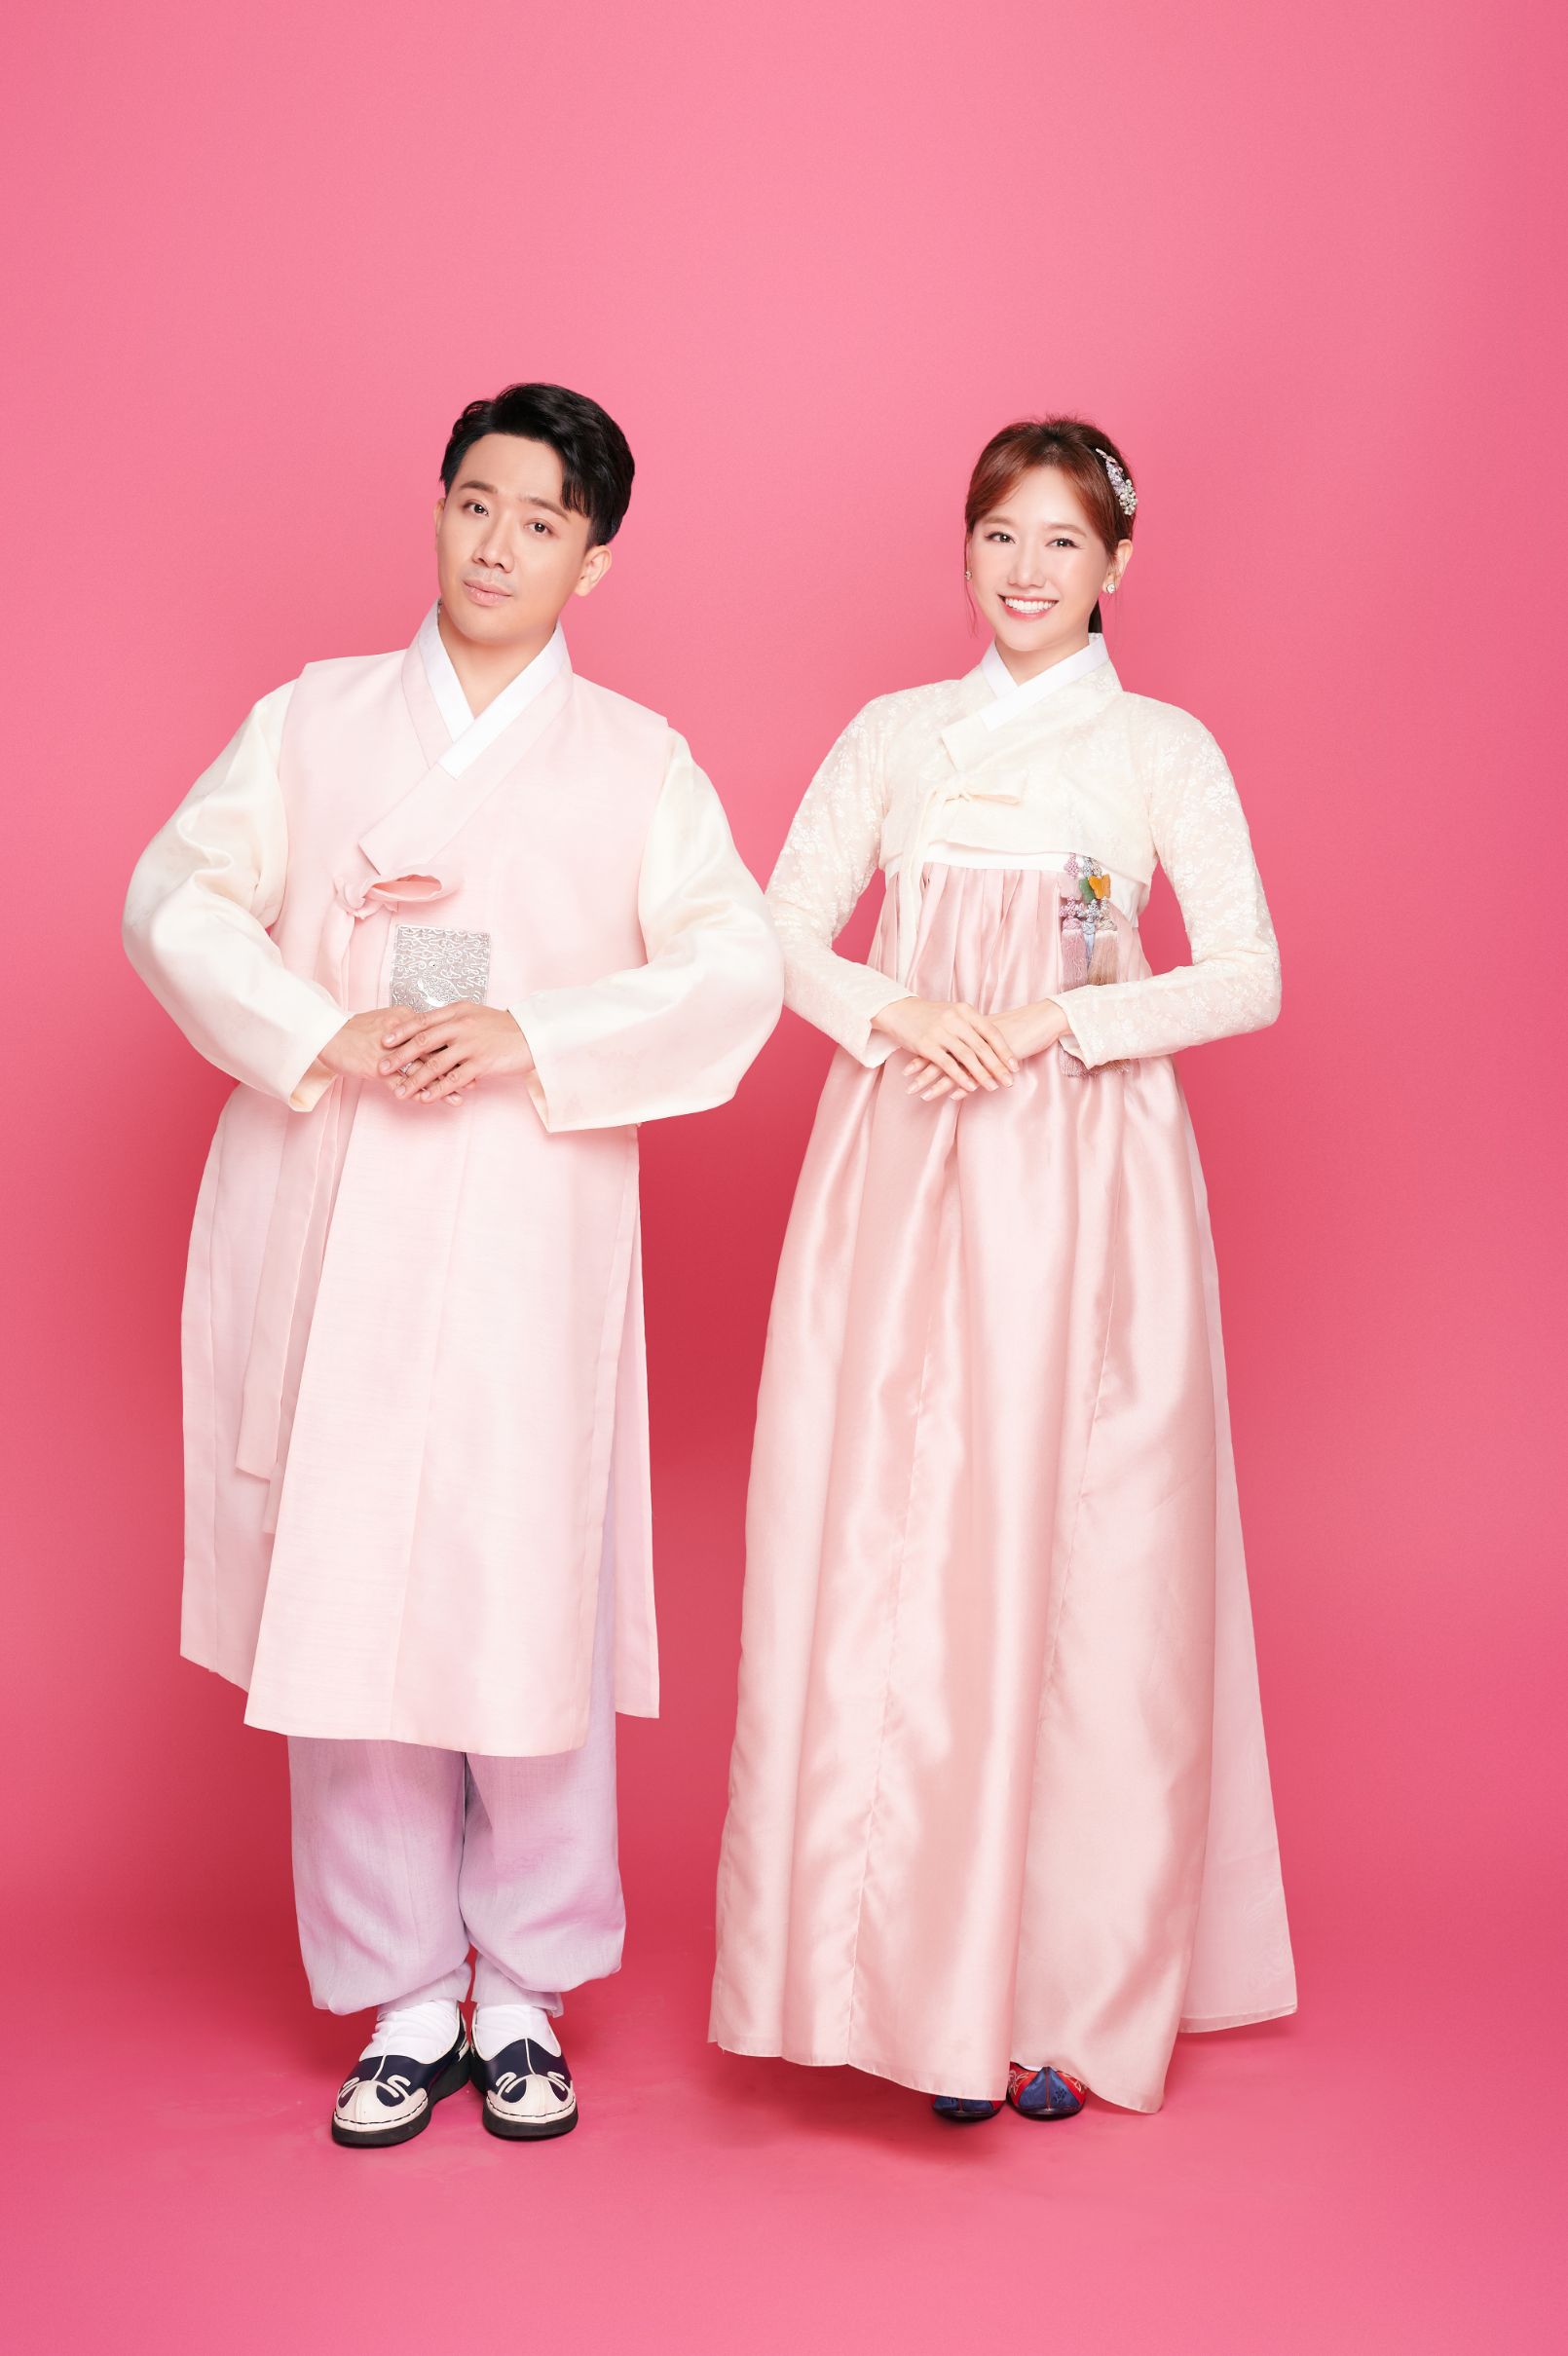 xin ri 5 Trấn Thành – Hari Won ngọt ngào trong trang phục hanbok, xóa tan tin đồn rạn nứt